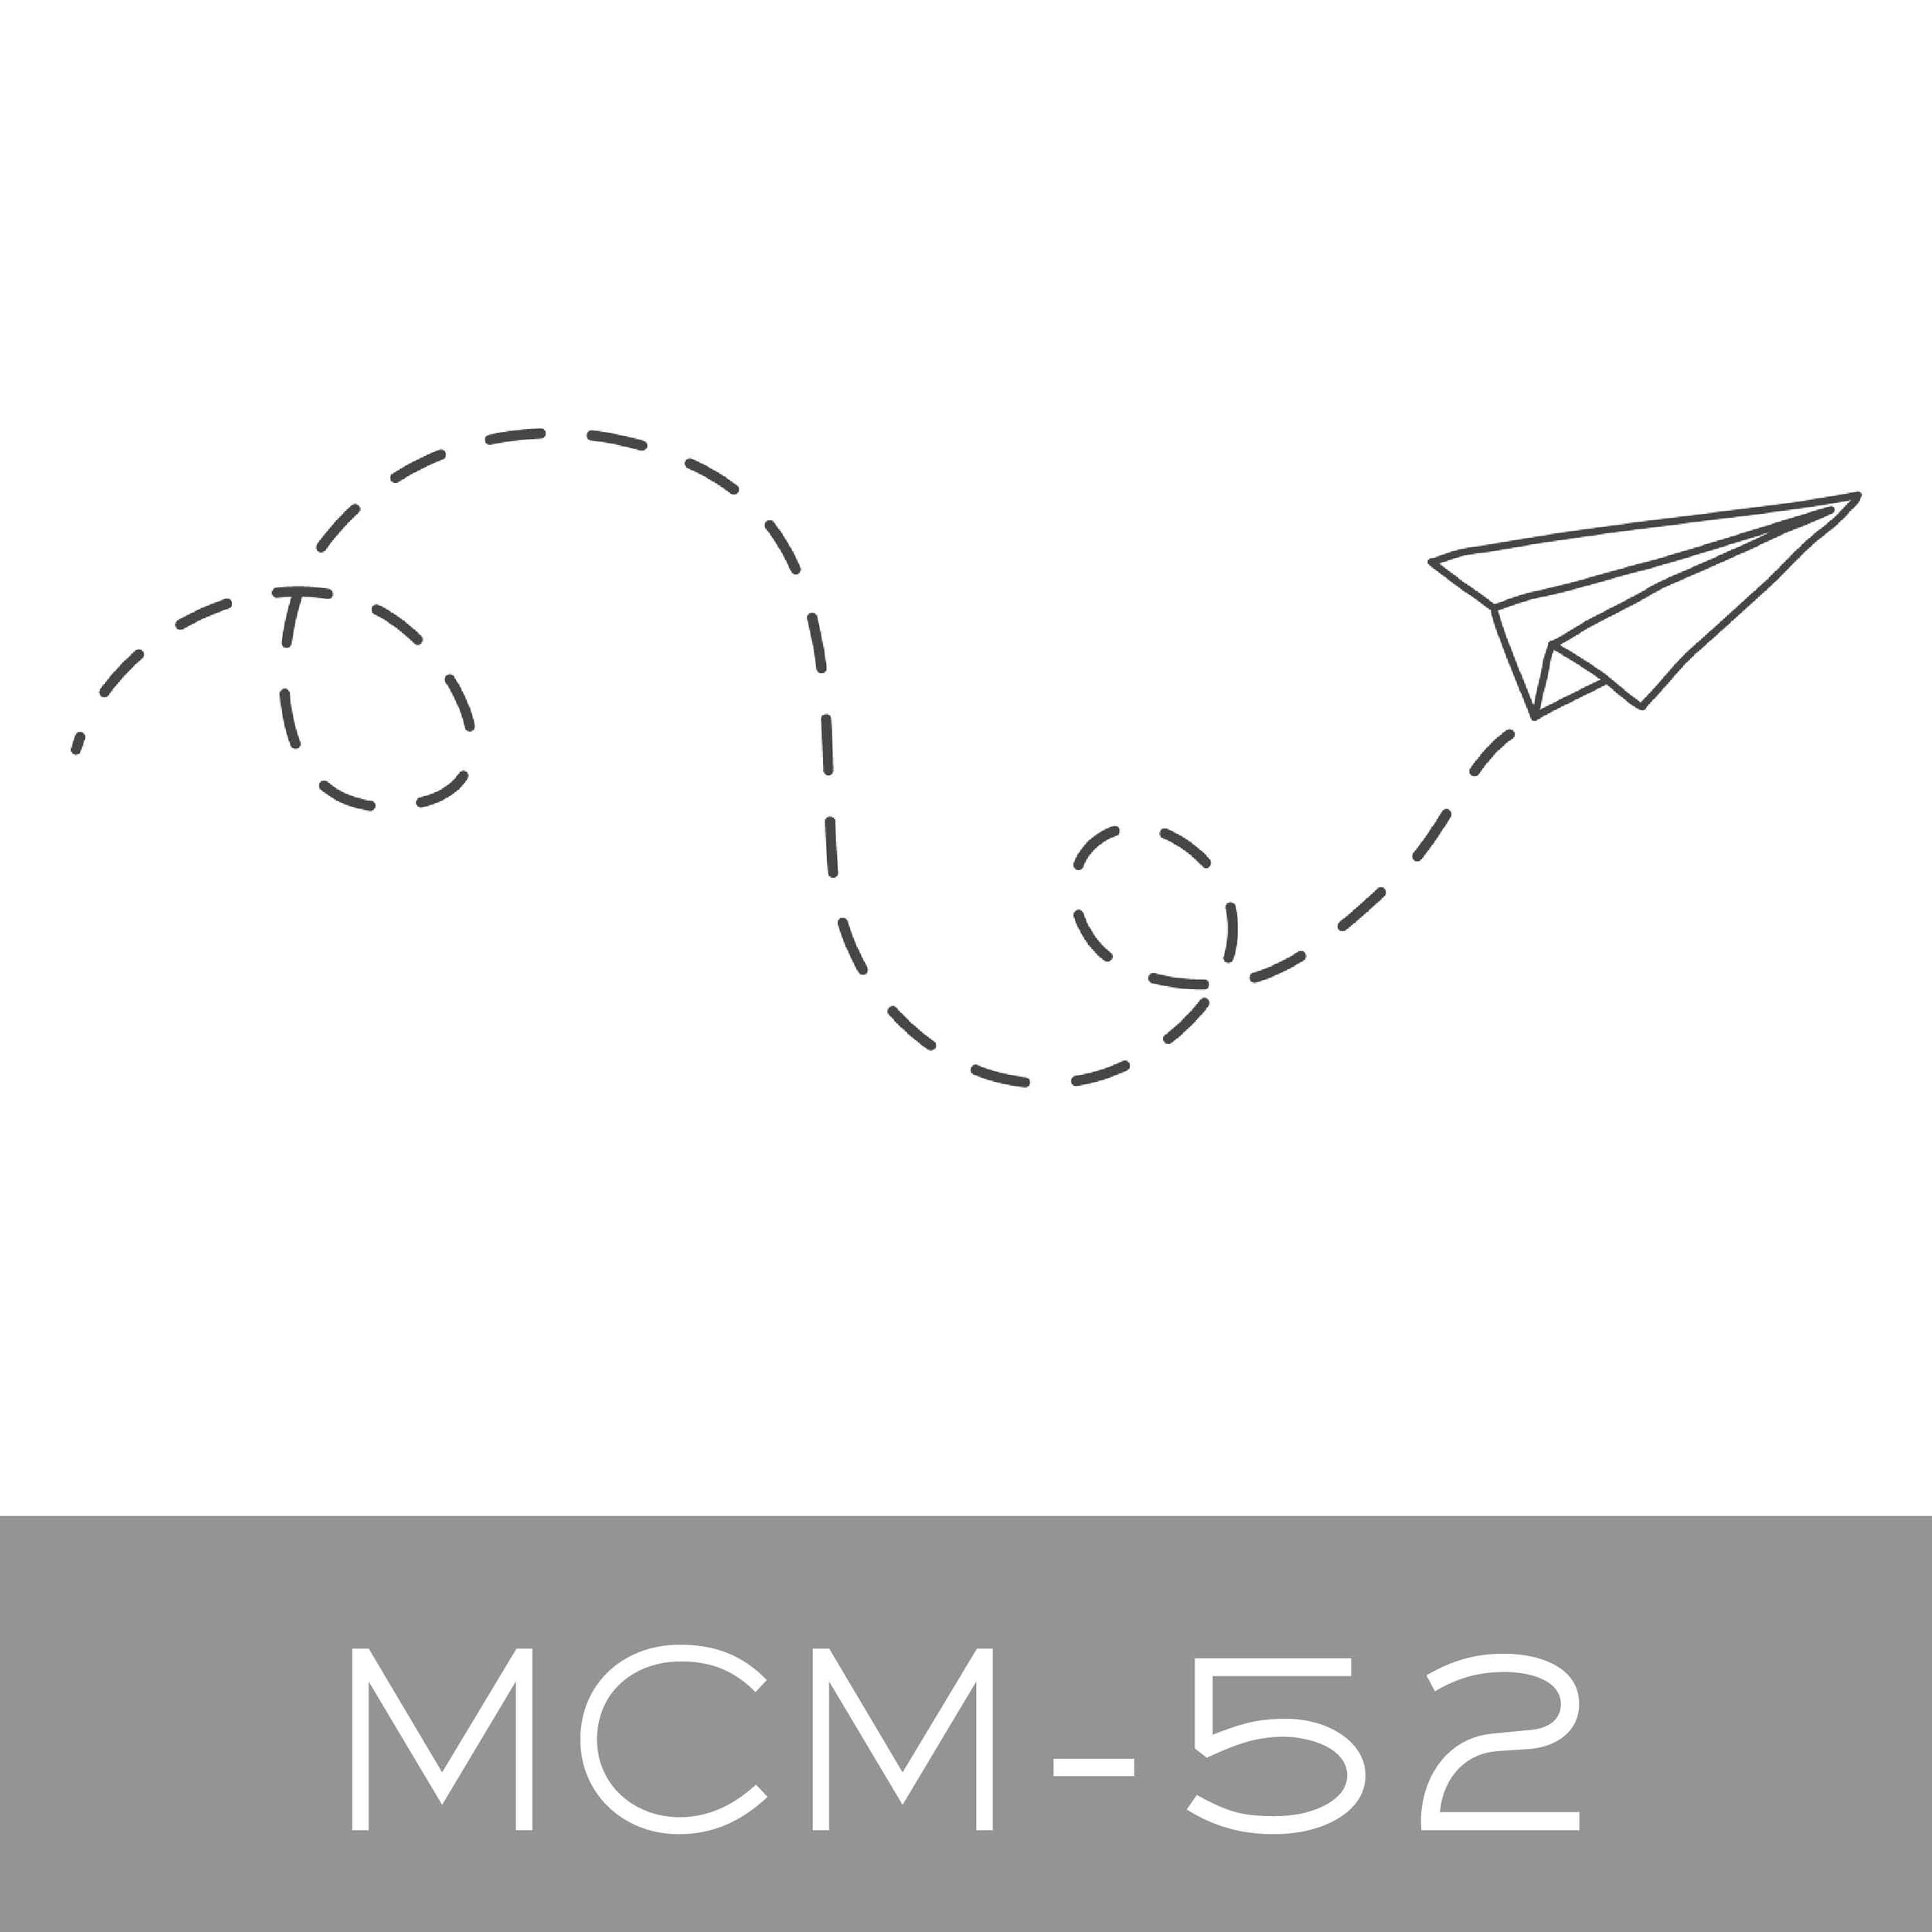 MCM-52.jpg